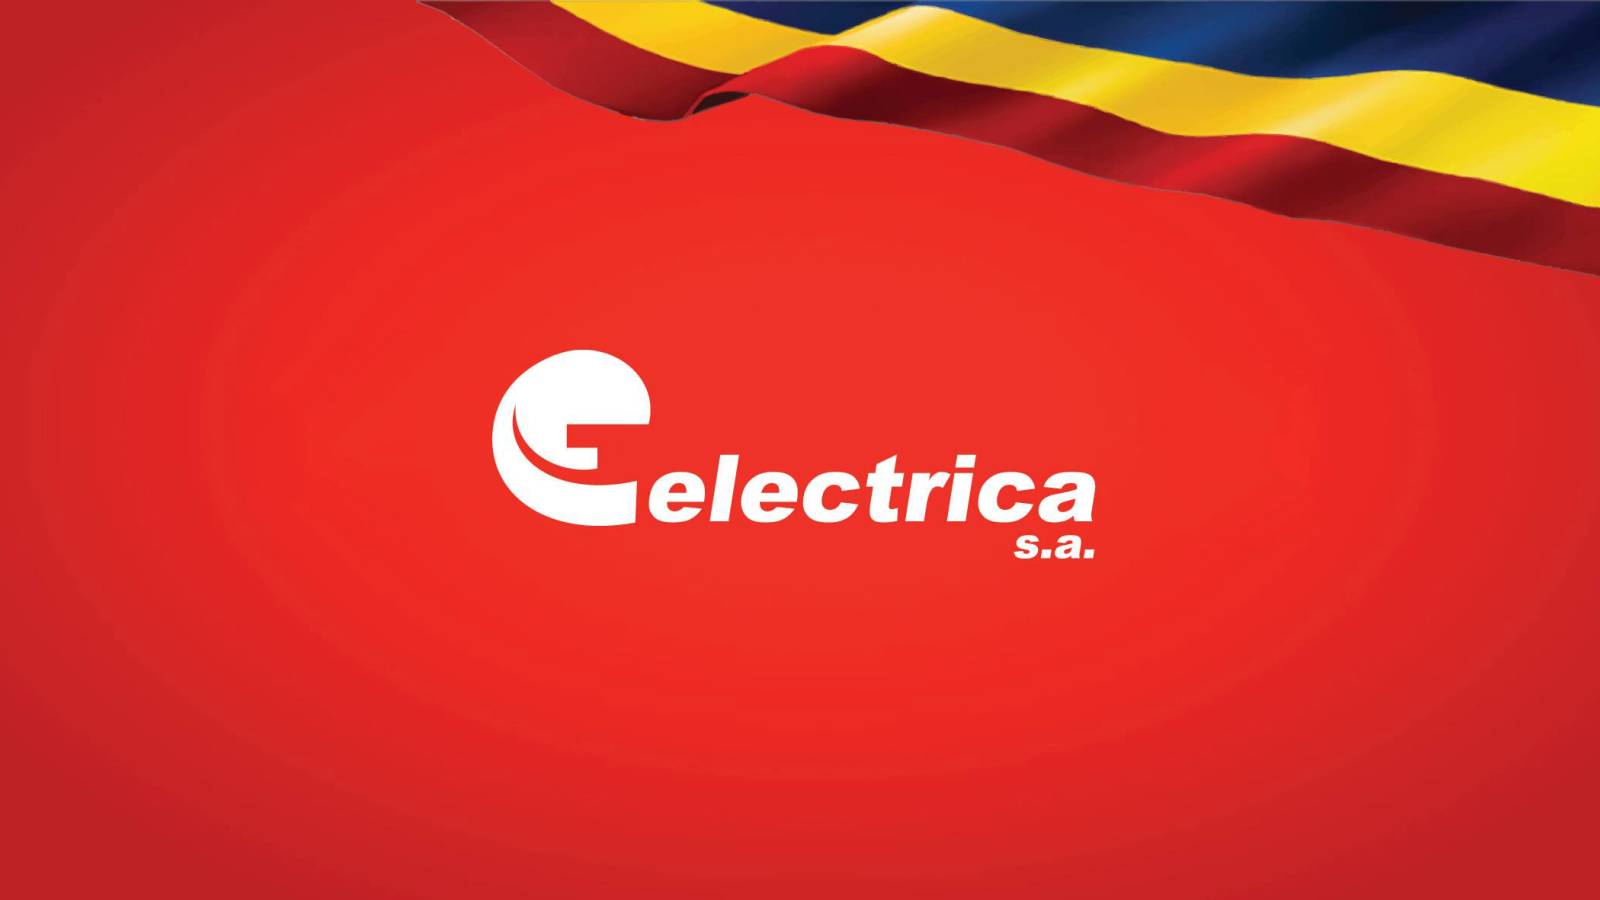 Estreno del anuncio de ÚLTIMA HORA de Electrica para Rumania